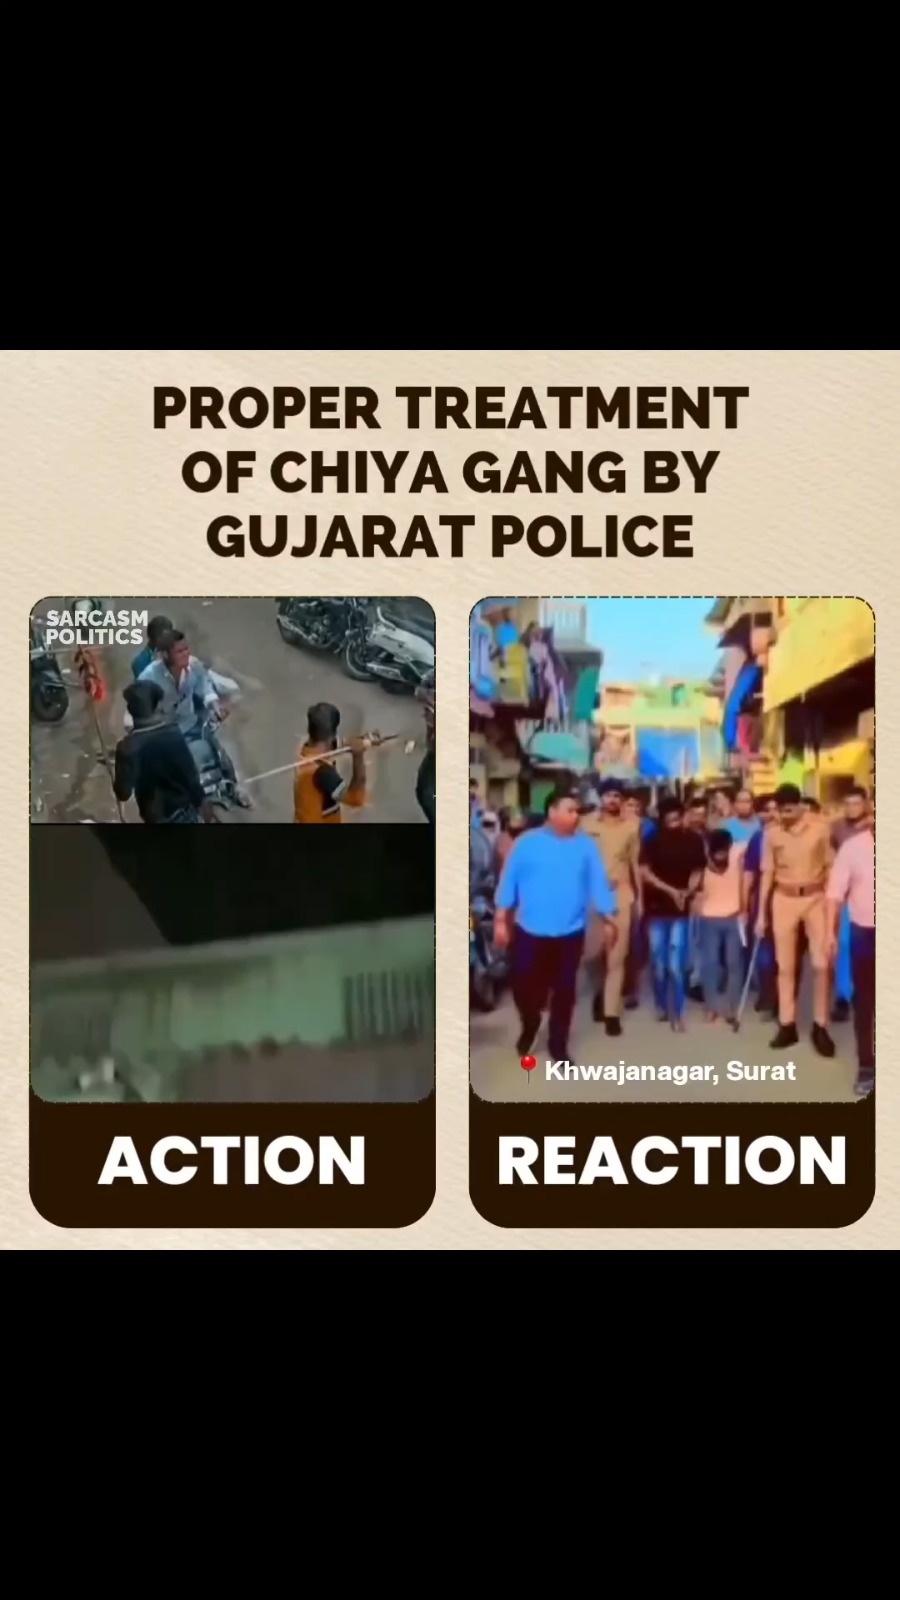 Proper treatment of ‘Chiya Gang’ in Khwajanagar by Gujarat Police 🫡